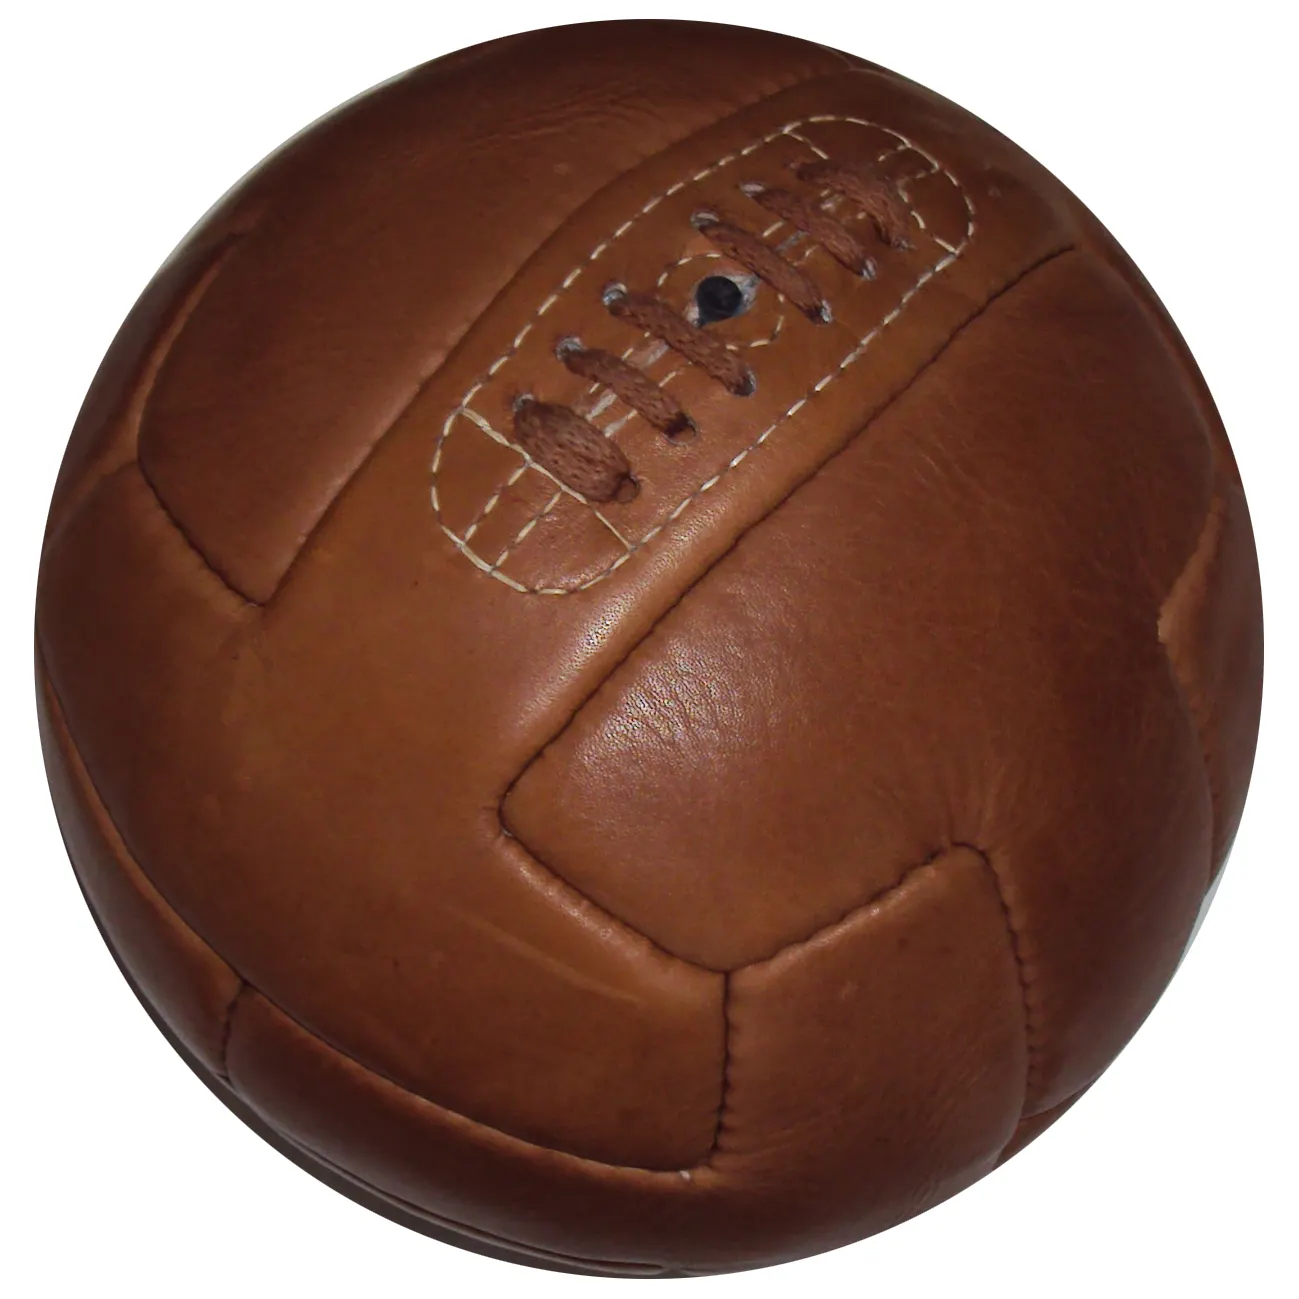 Кожаный футбольный мяч в античном стиле